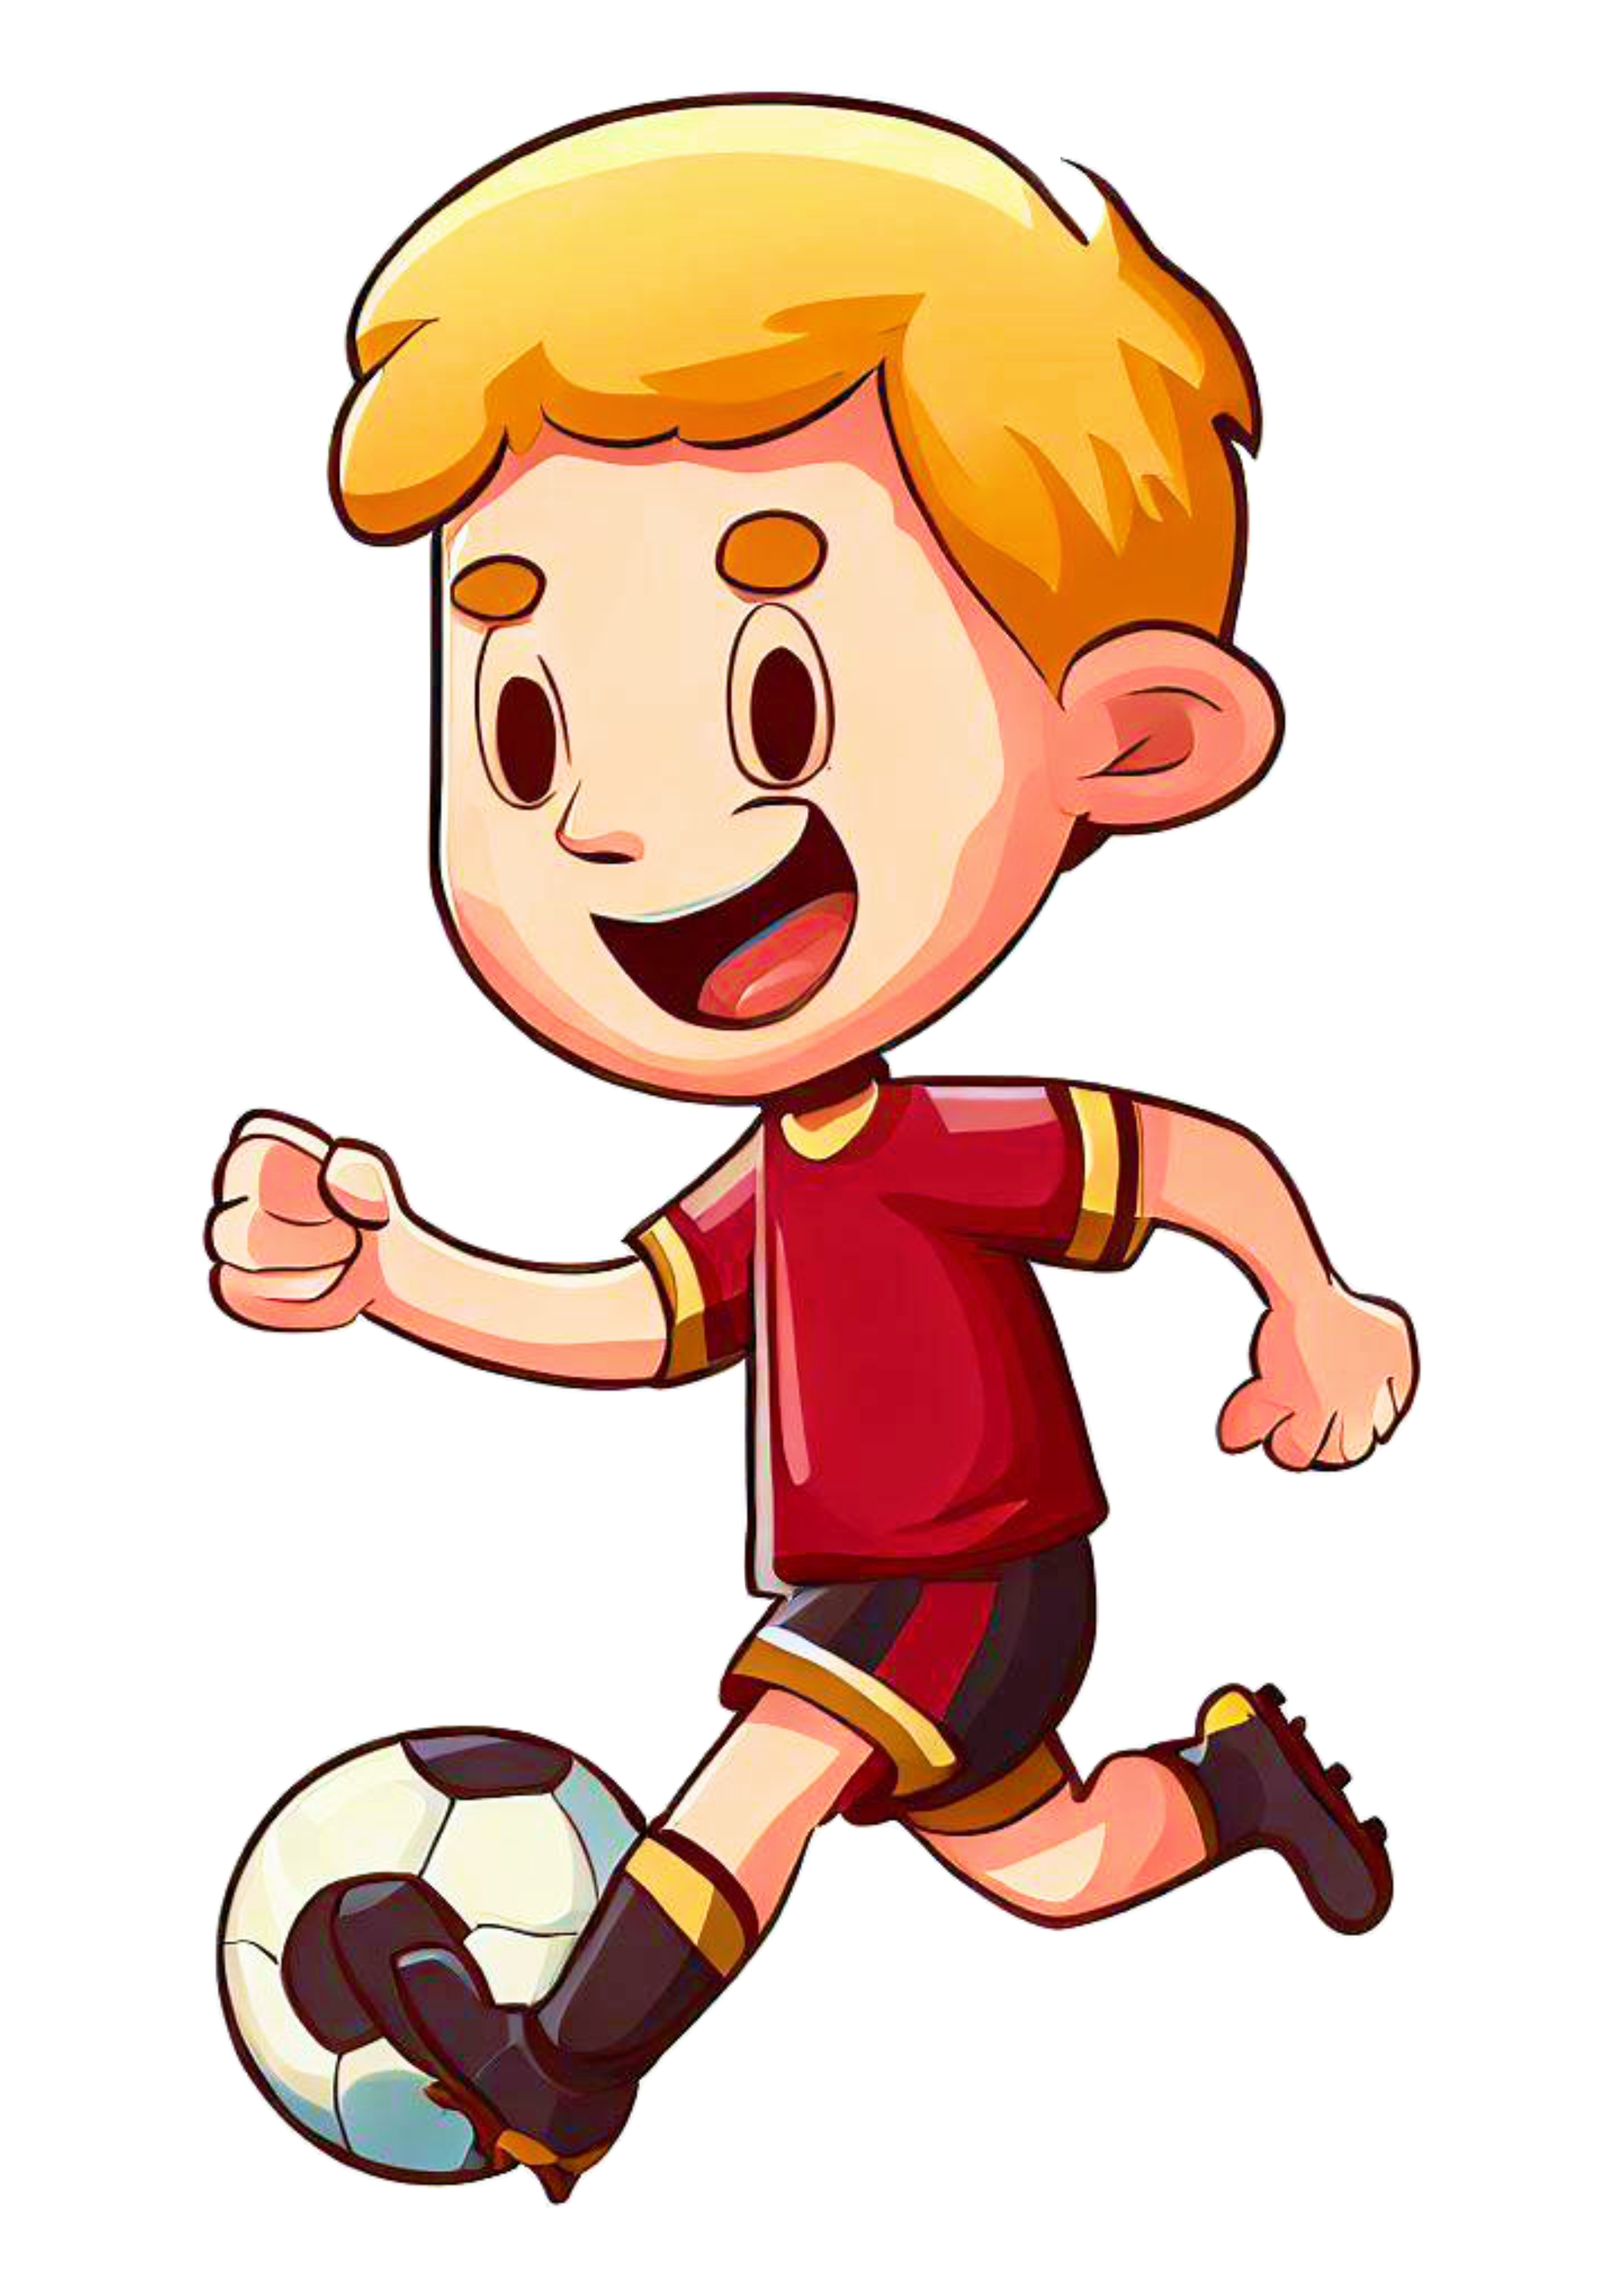 Jogador de futebol, desenho de jogador de futebol, esporte, braço png